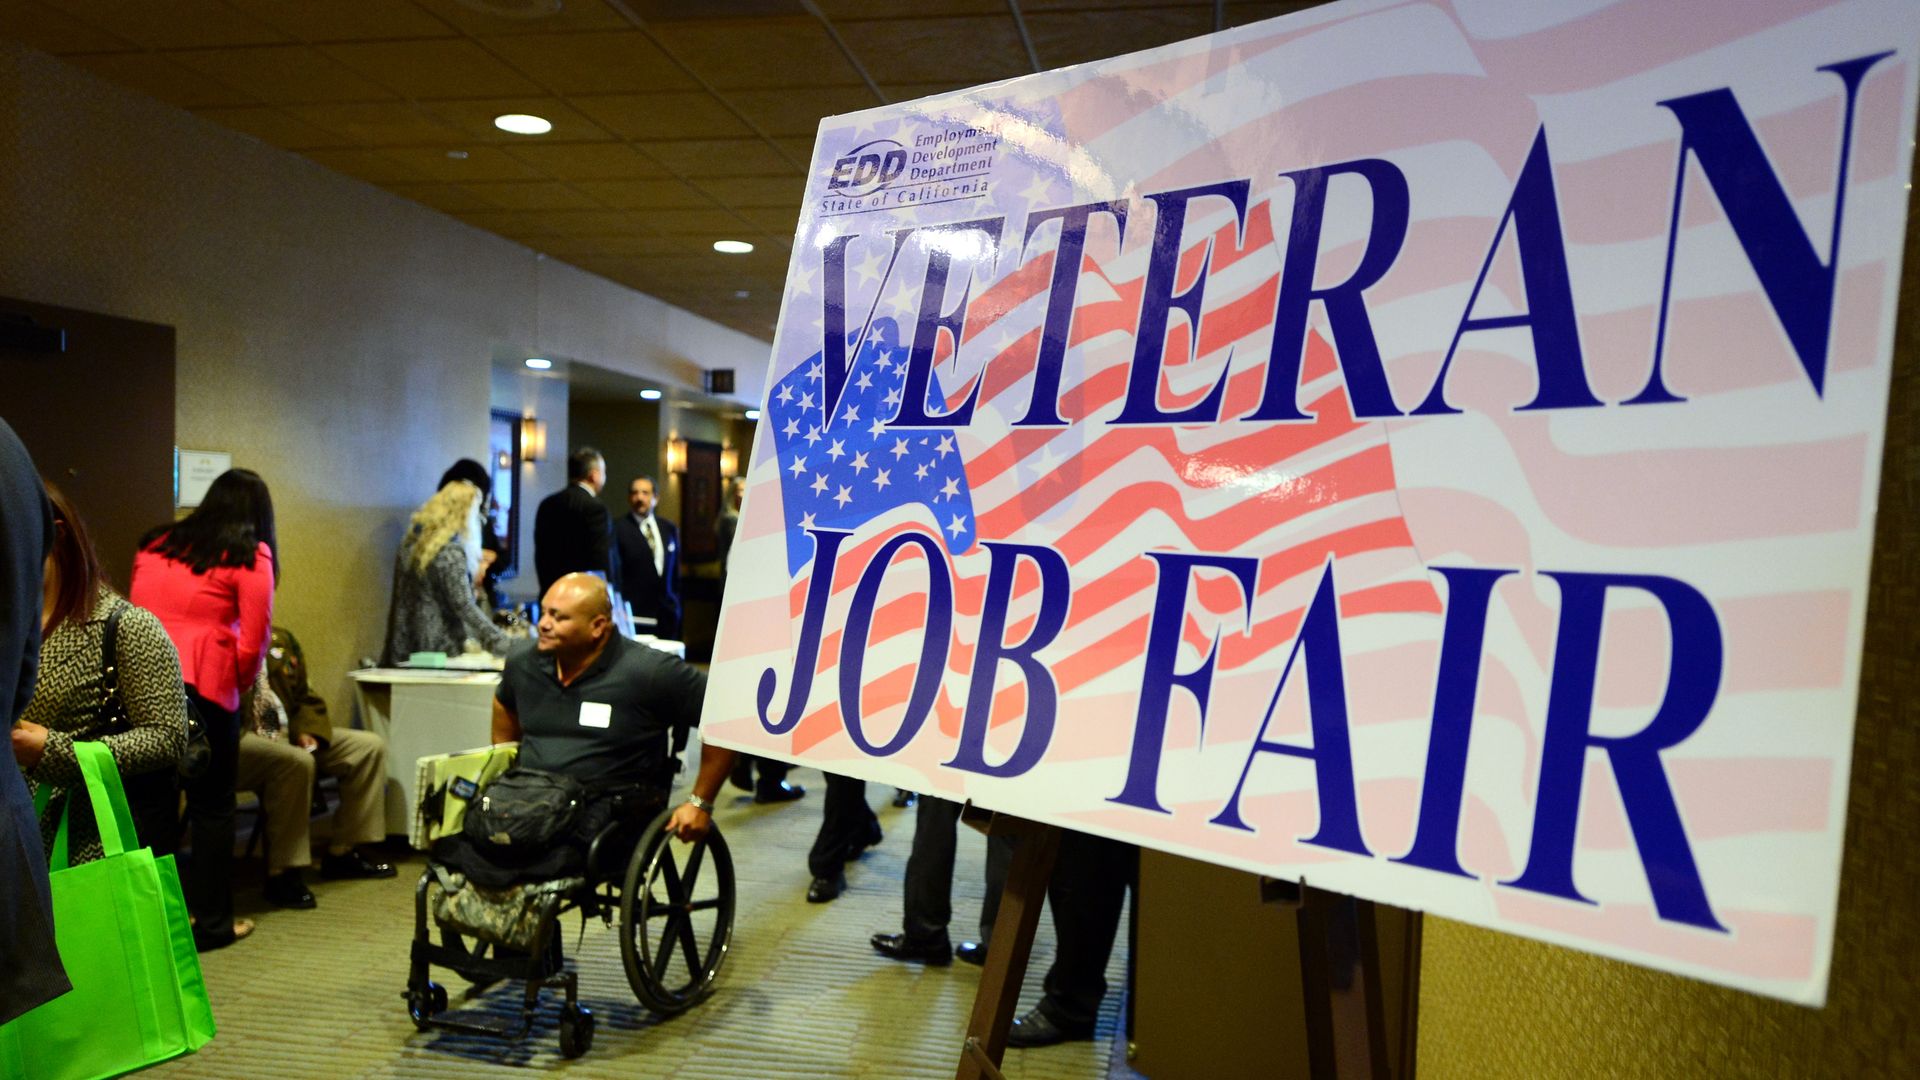 Veteran Job Fair Sign